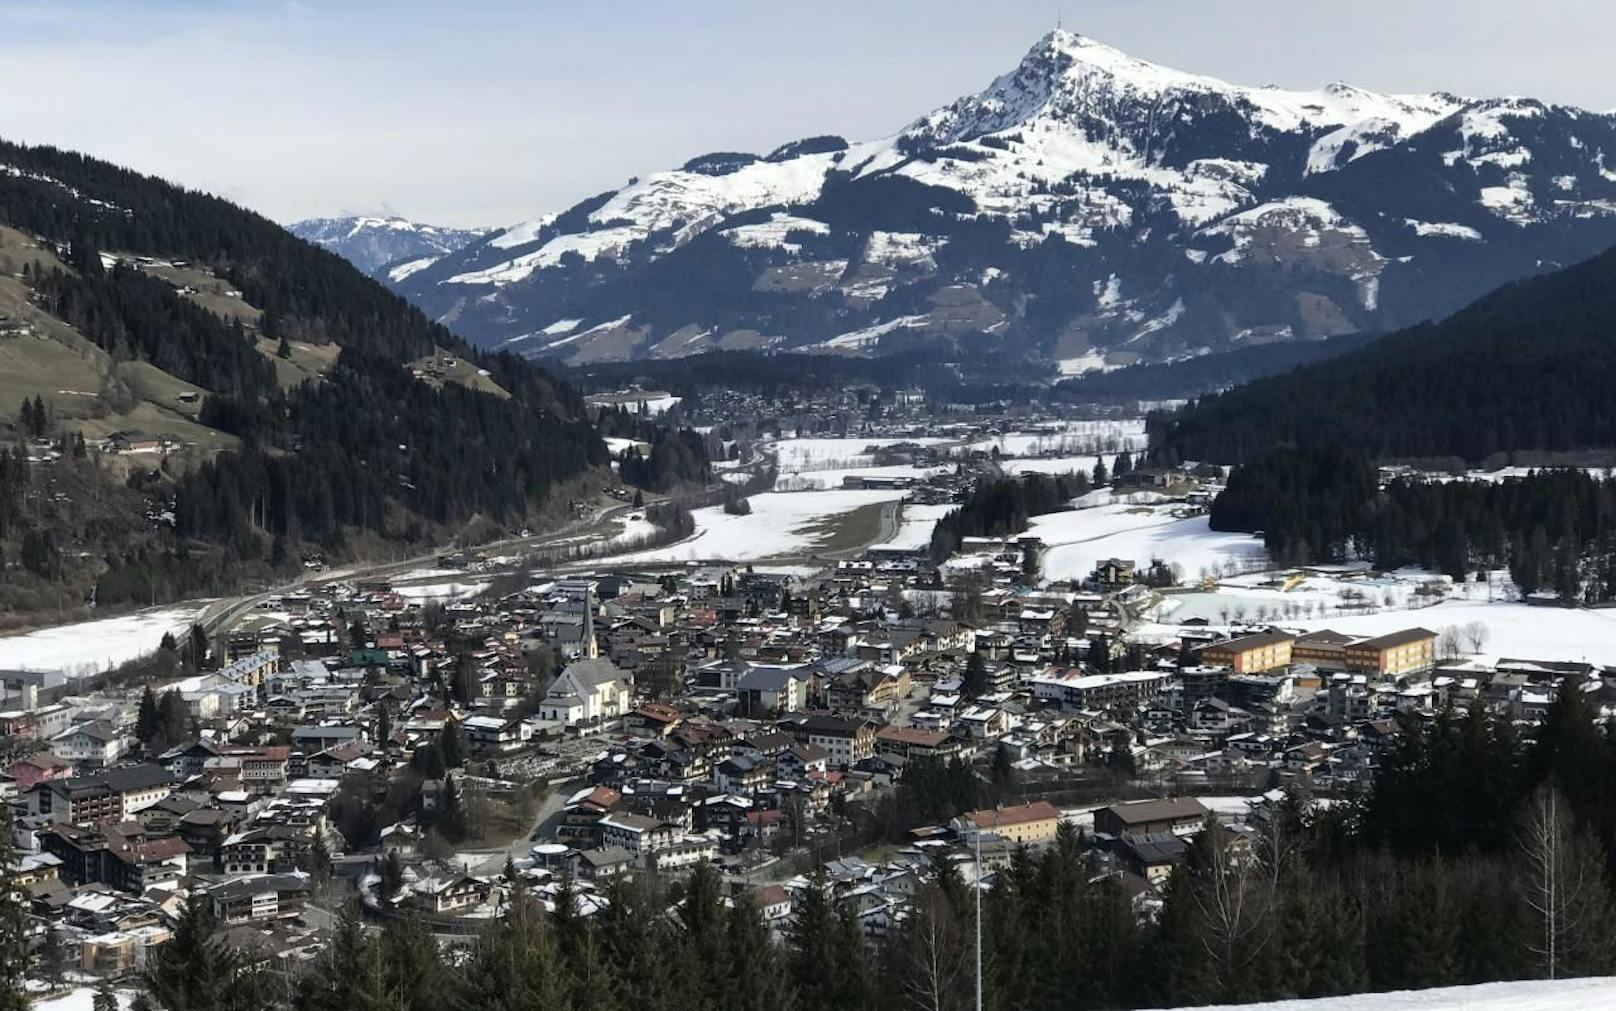 Im Bild: Eine Übersichtsaufnahme von Kirchberg in Tirol.